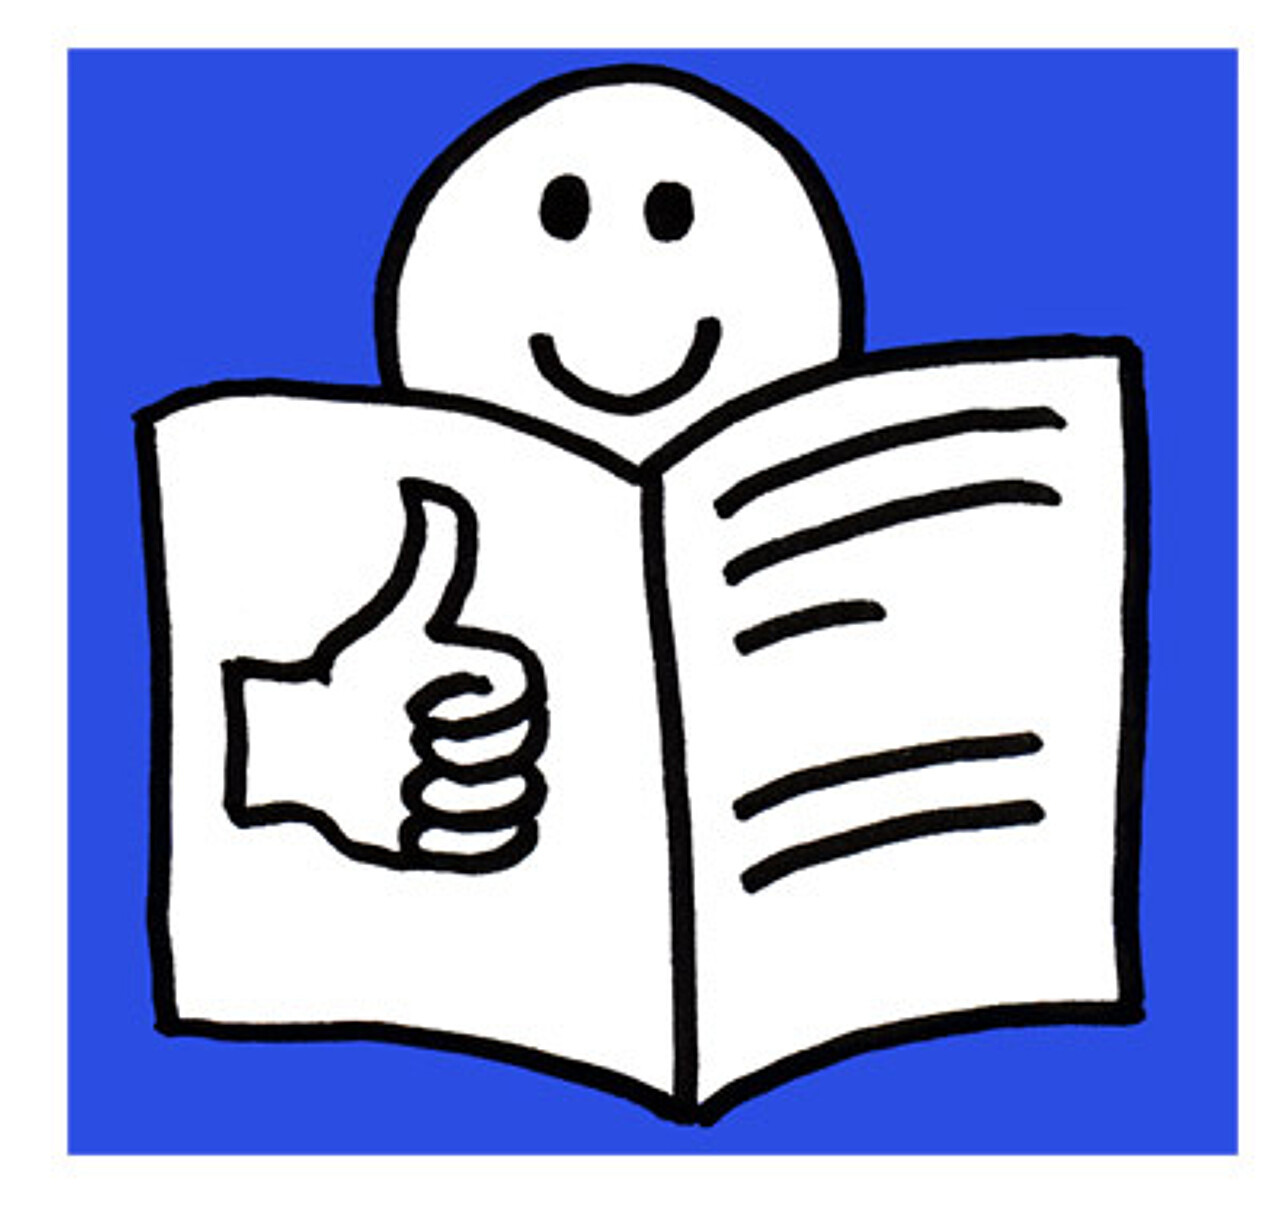 Logo der leichten Sprache, bestehend aus einem Buch, einem Daumen hoch und einem lächelnden Smilie